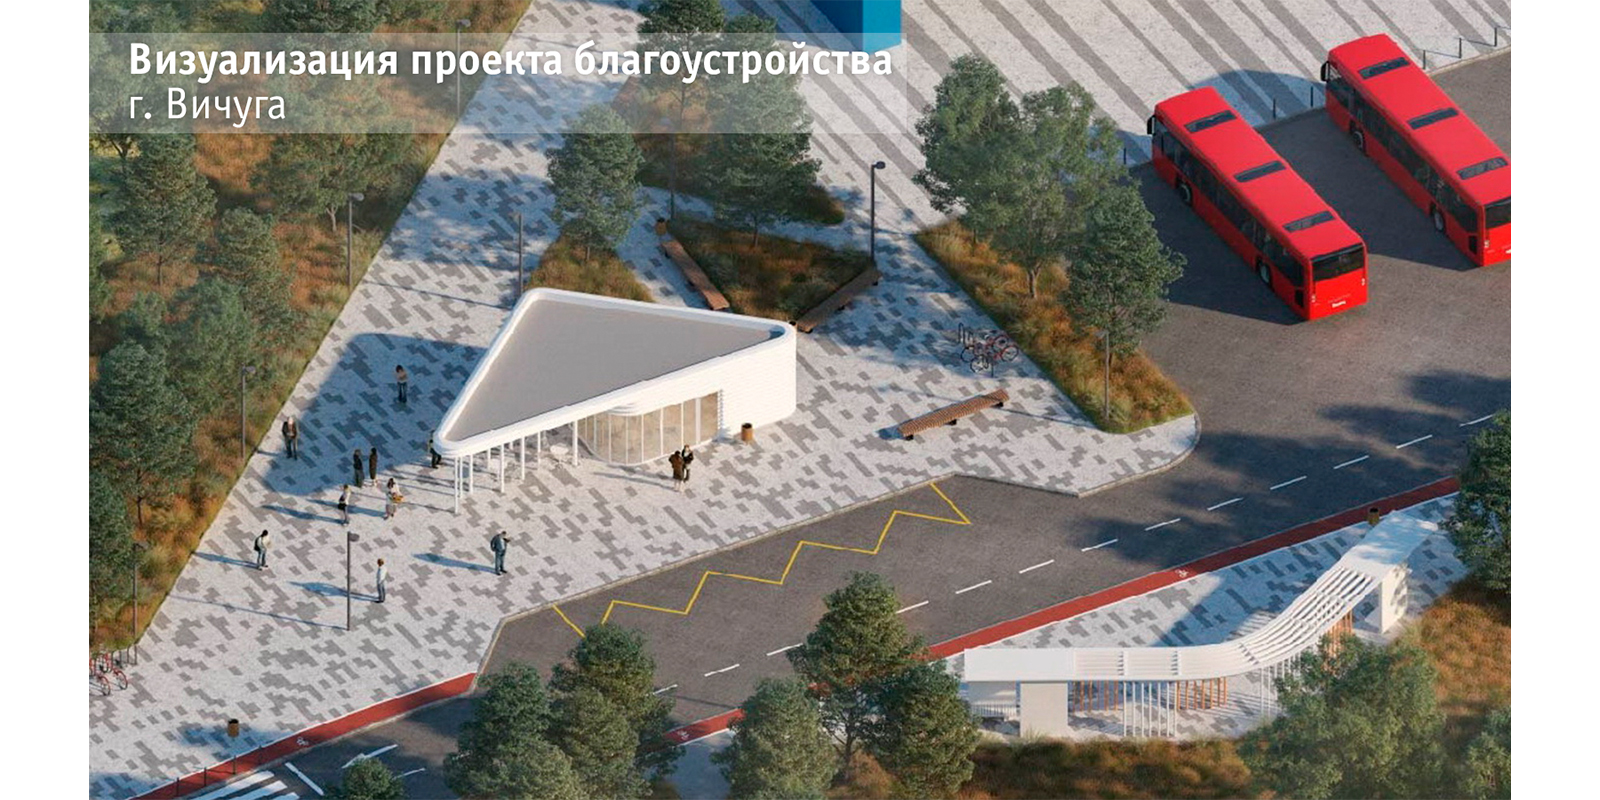 Еще один город Ивановской области преобразят на средства гранта конкурса благоустройства малых городов